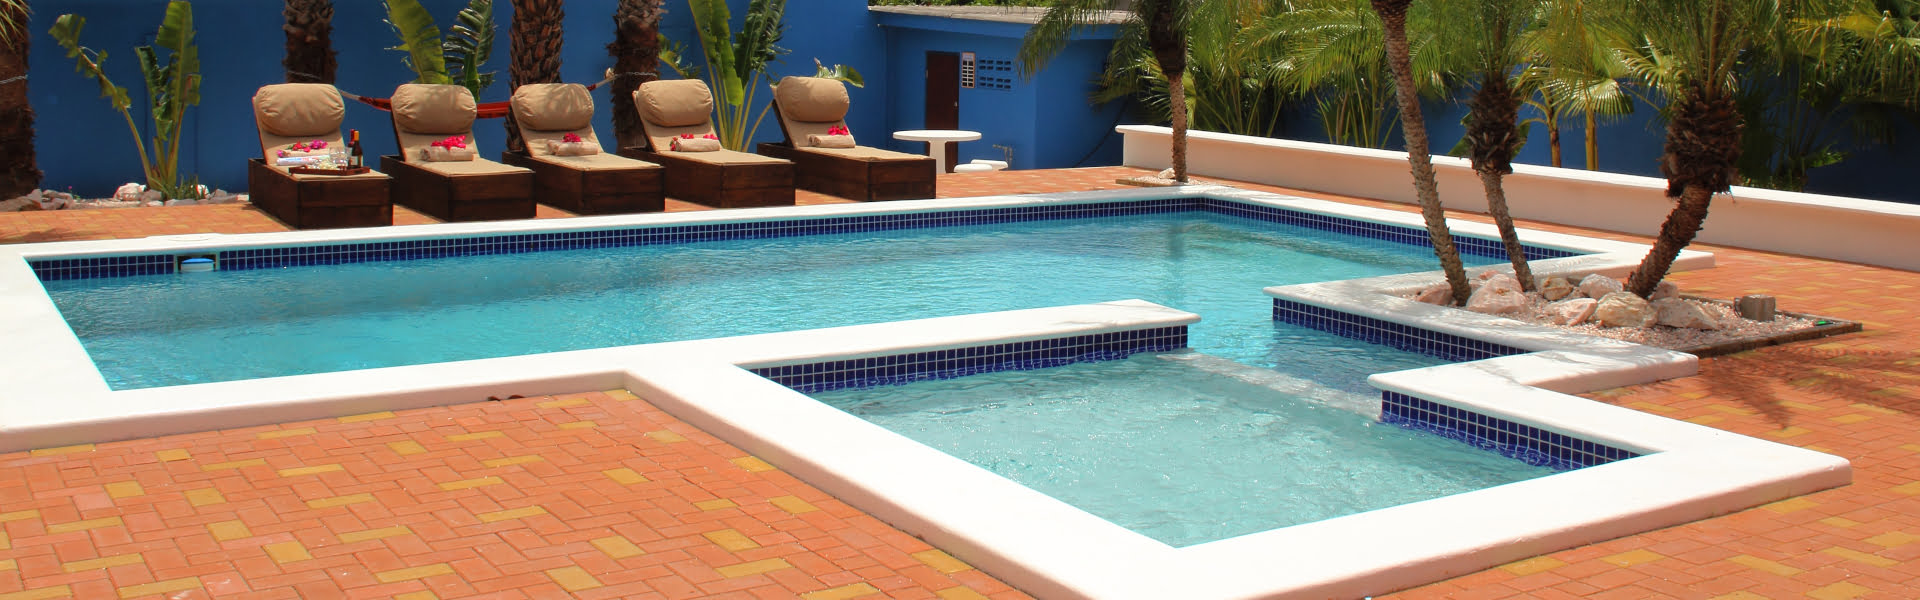 Vakantiehuis Curacao met kinderbadje huren